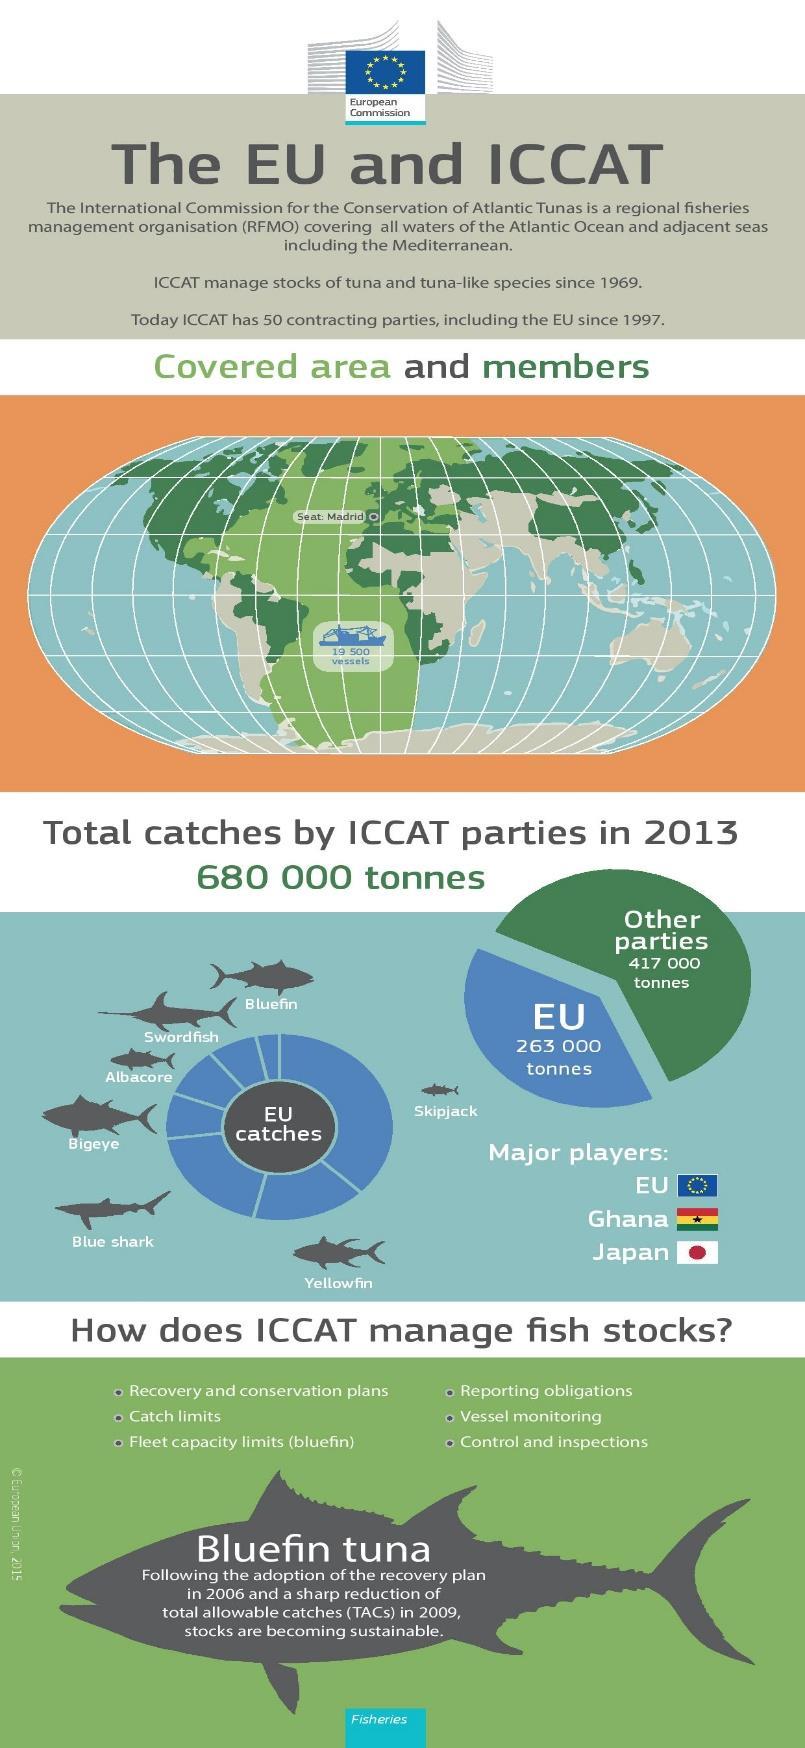 Πίνακας 2: Διαχείριση φορτίου των μελών του ICCAT21. Πηγή:http://ec.europa.eu/fisheries/documentation/eu_fisheries_key_facts/index_el.